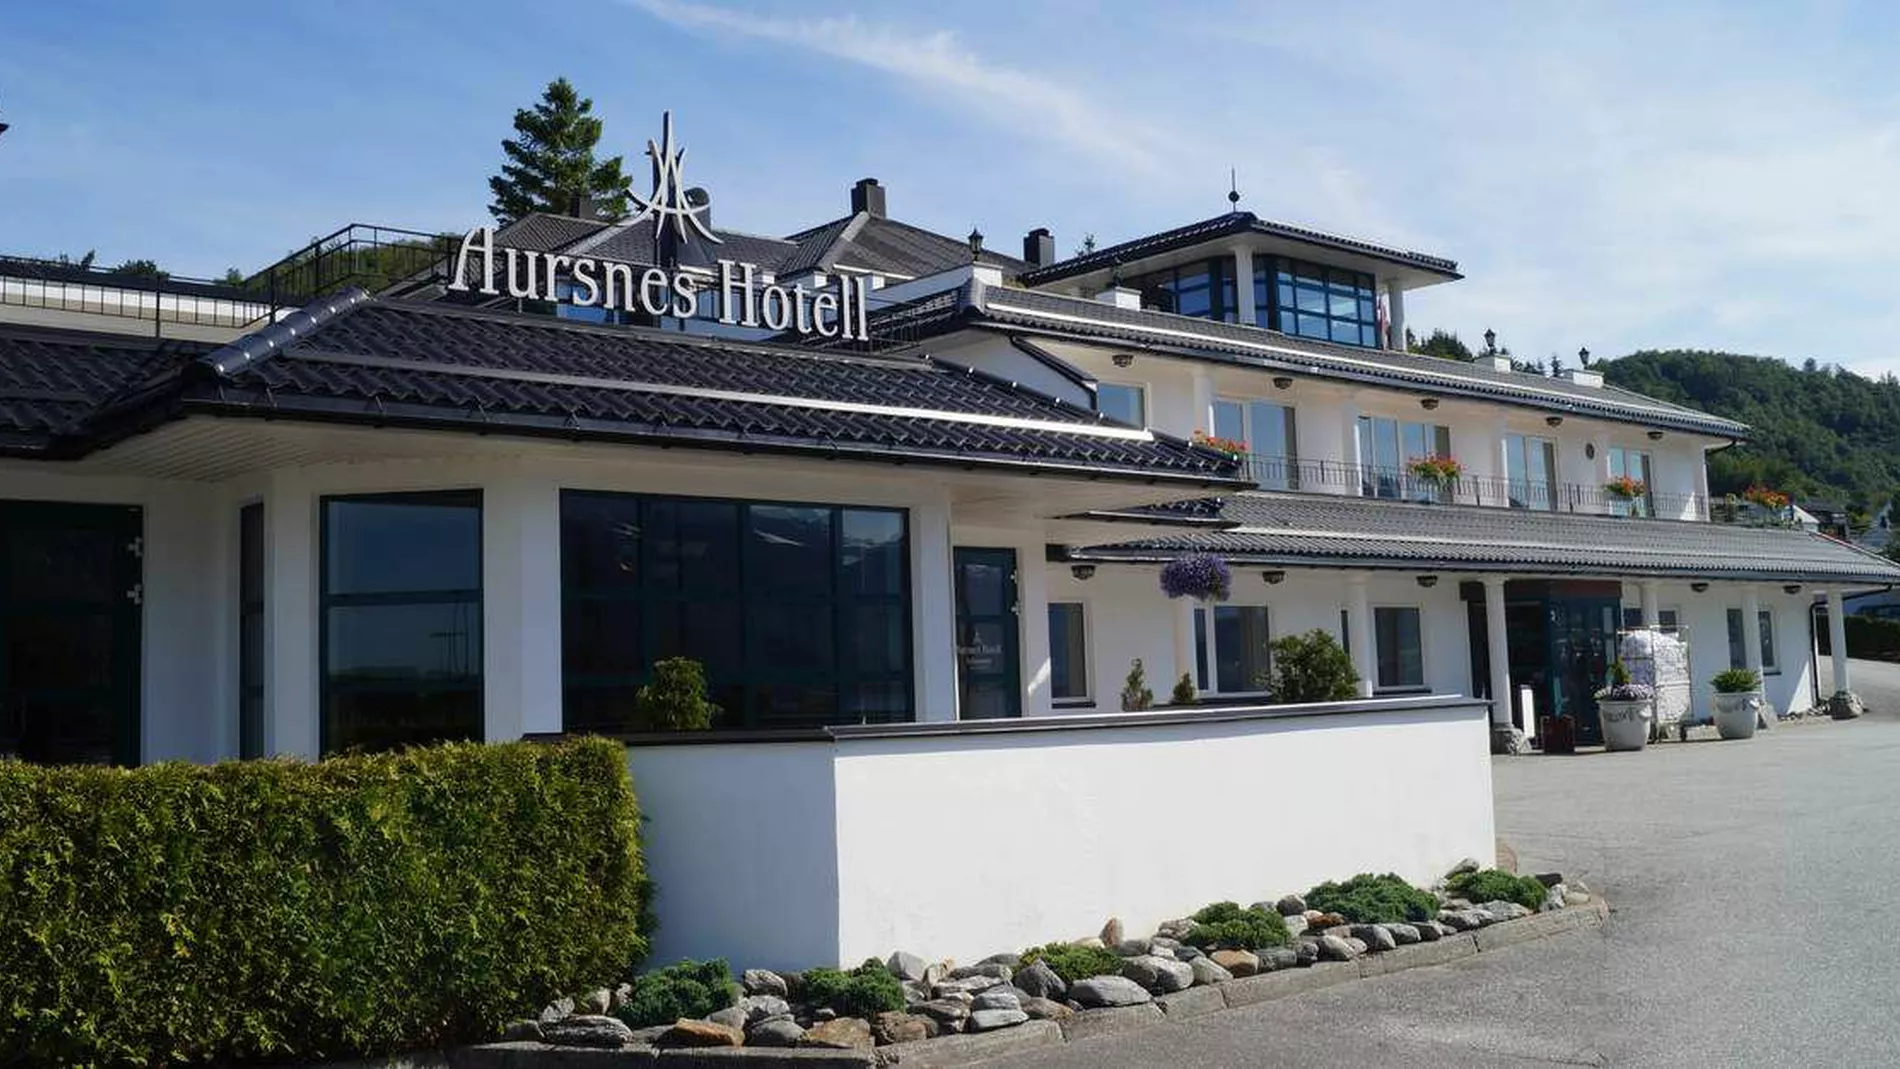 Stabilt for Aursnes Hotell